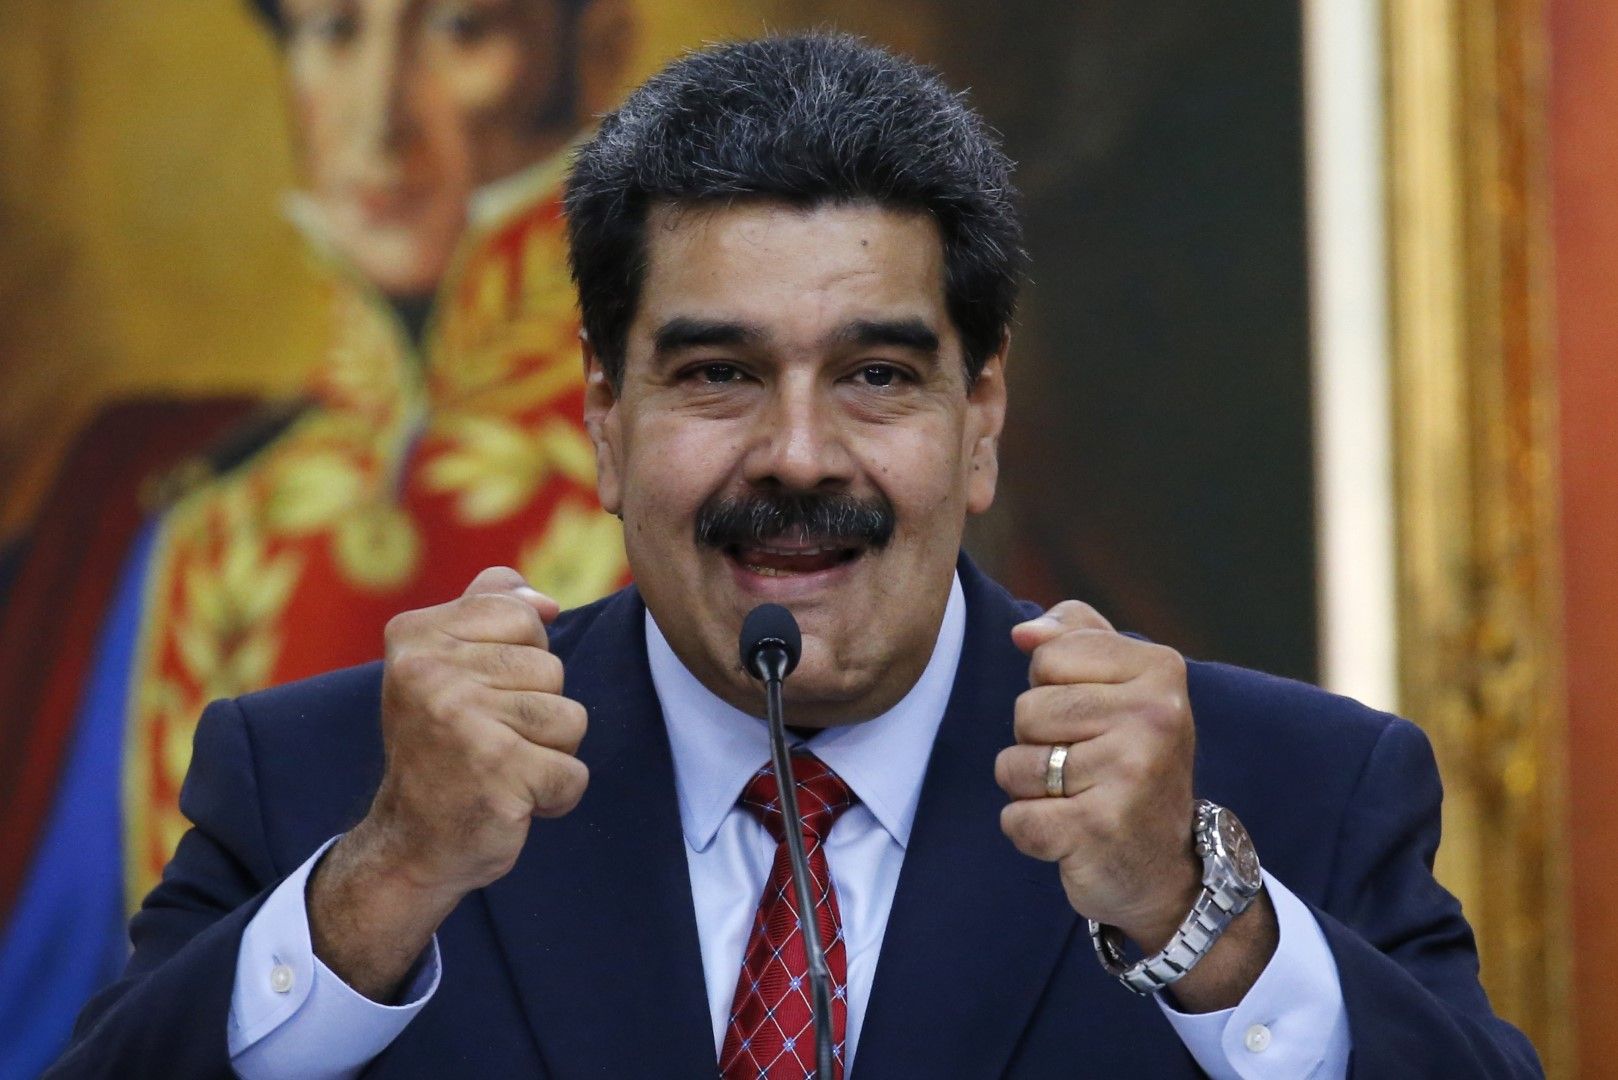 Възможно е да се стигне до гражданска война във Венецуела, намекна президентът Николас Мадуро